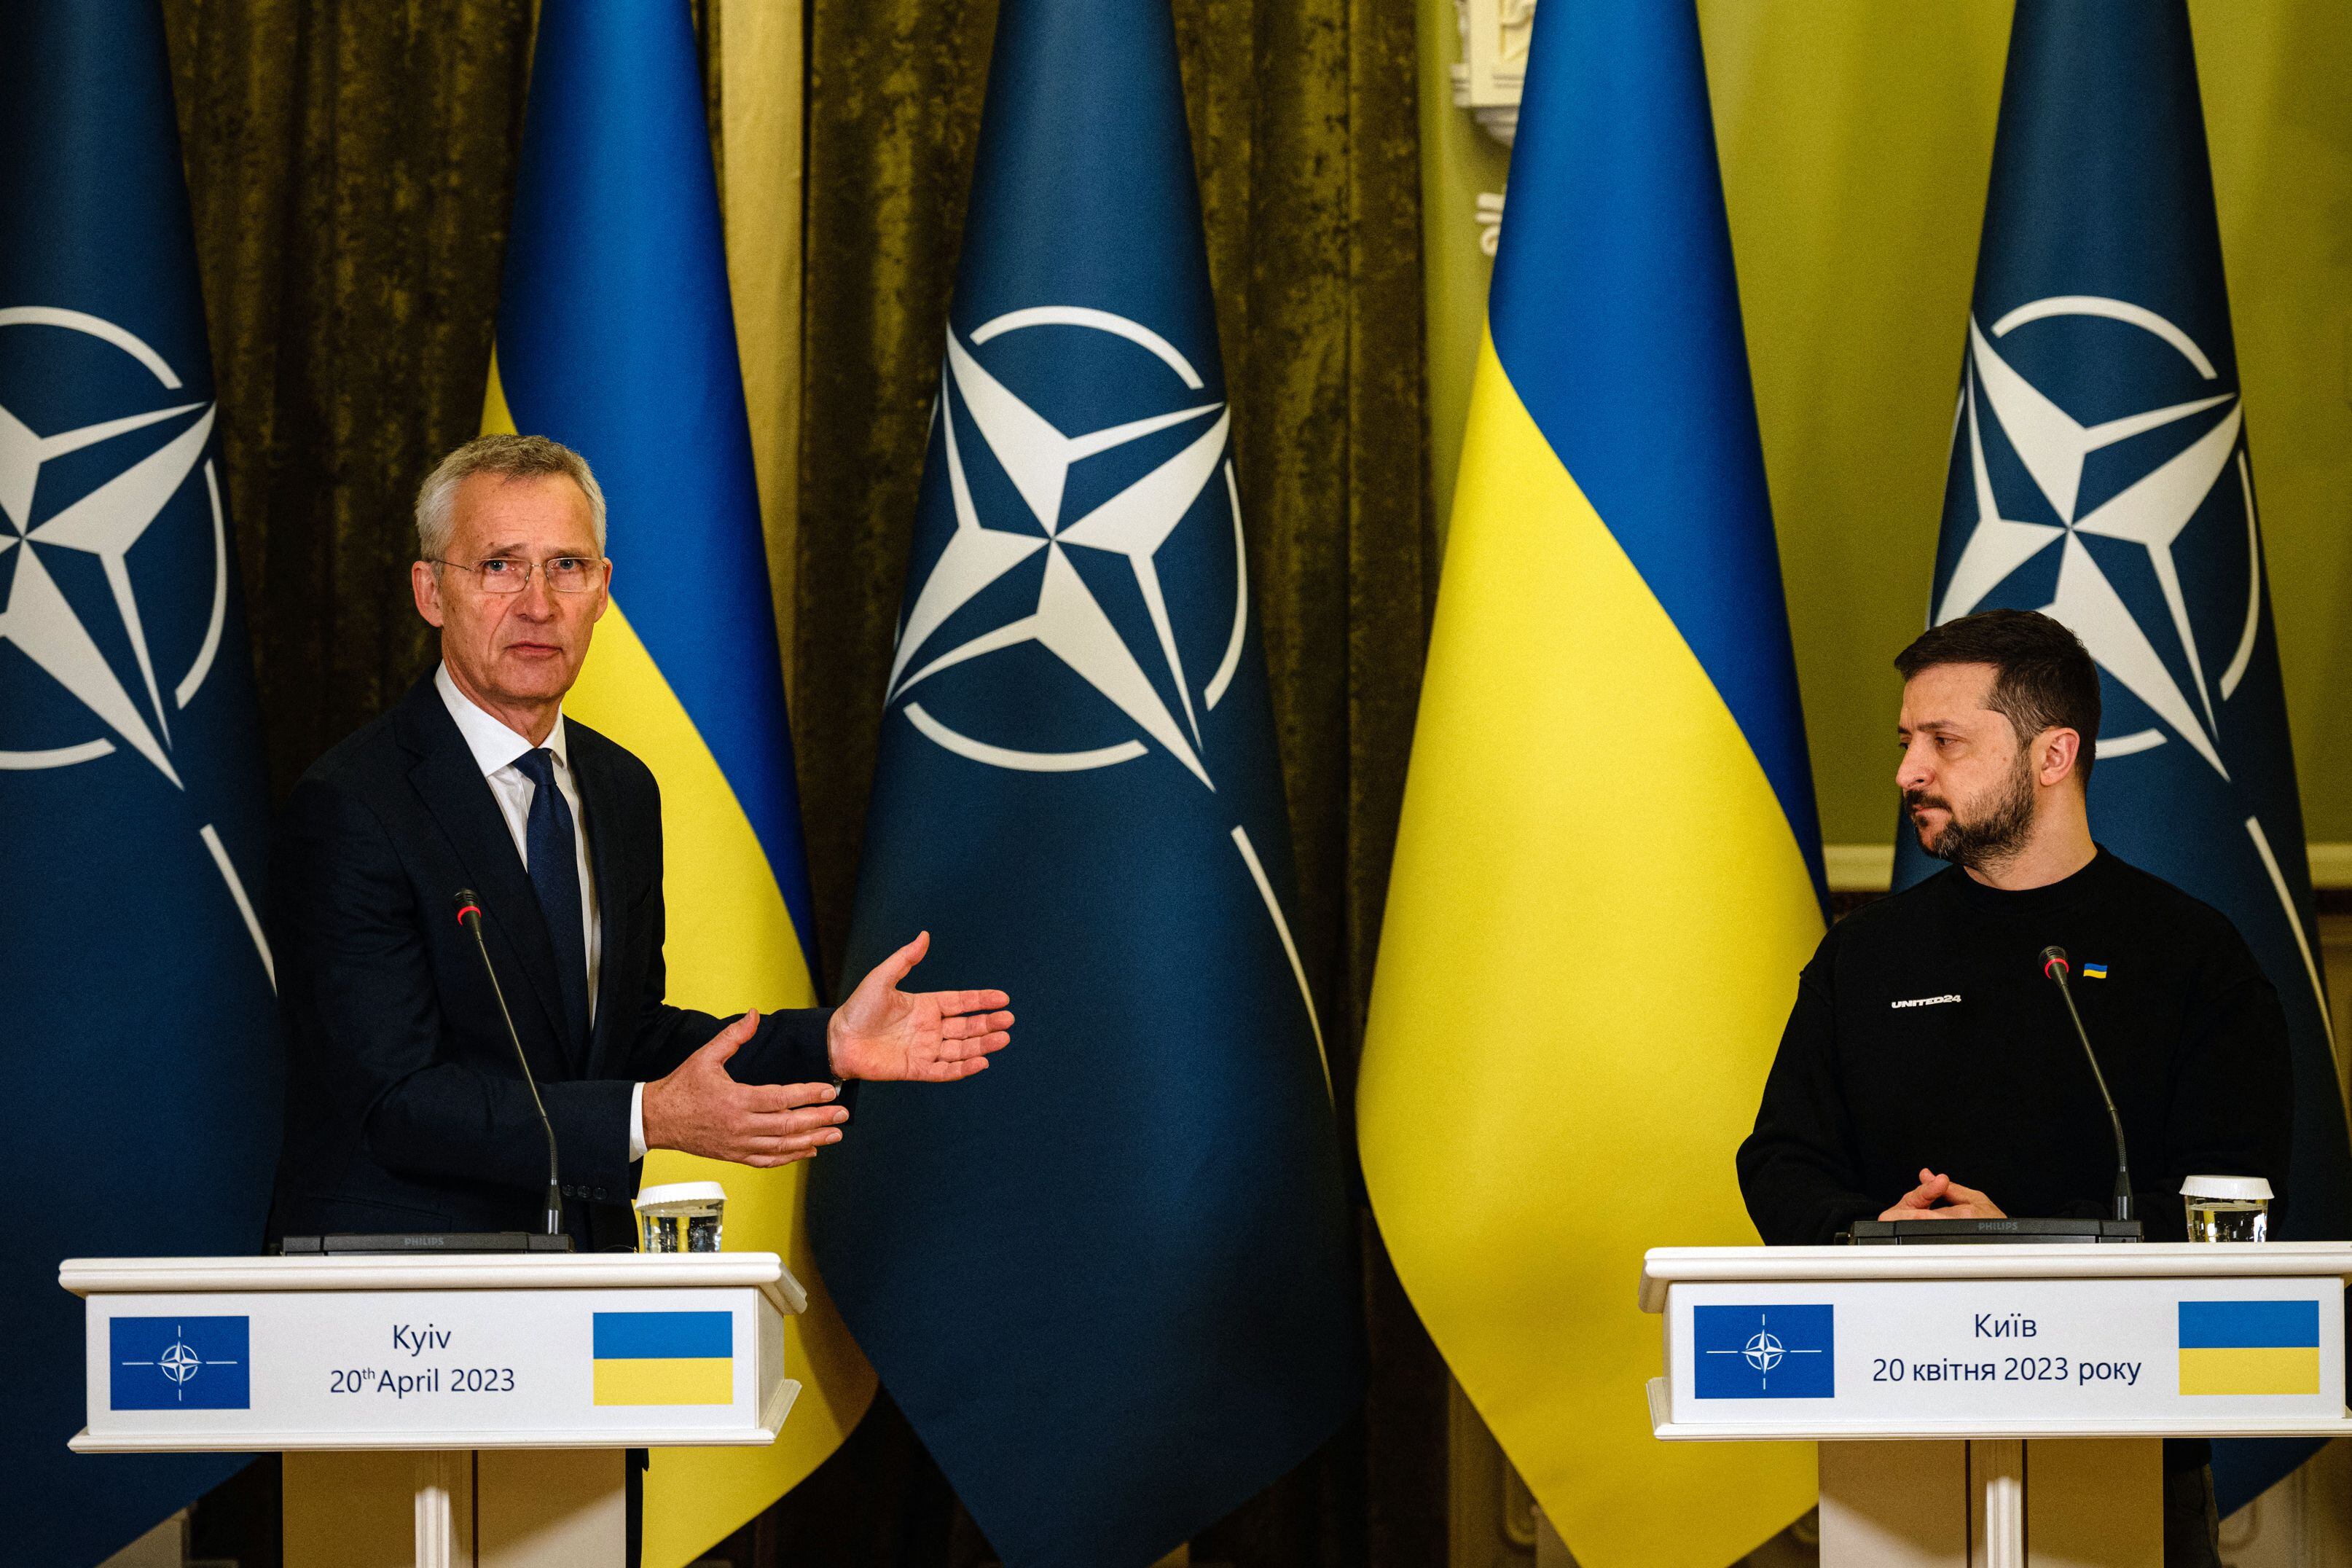 El jefe de la OTAN, Jens Stoltenberg (izquierda), y el presidente de Ucrania, Volodymyr Zelensky, dan una conferencia de prensa conjunta en Kiev, el 20 de abril de 2023, en medio de la invasión rusa de Ucrania.